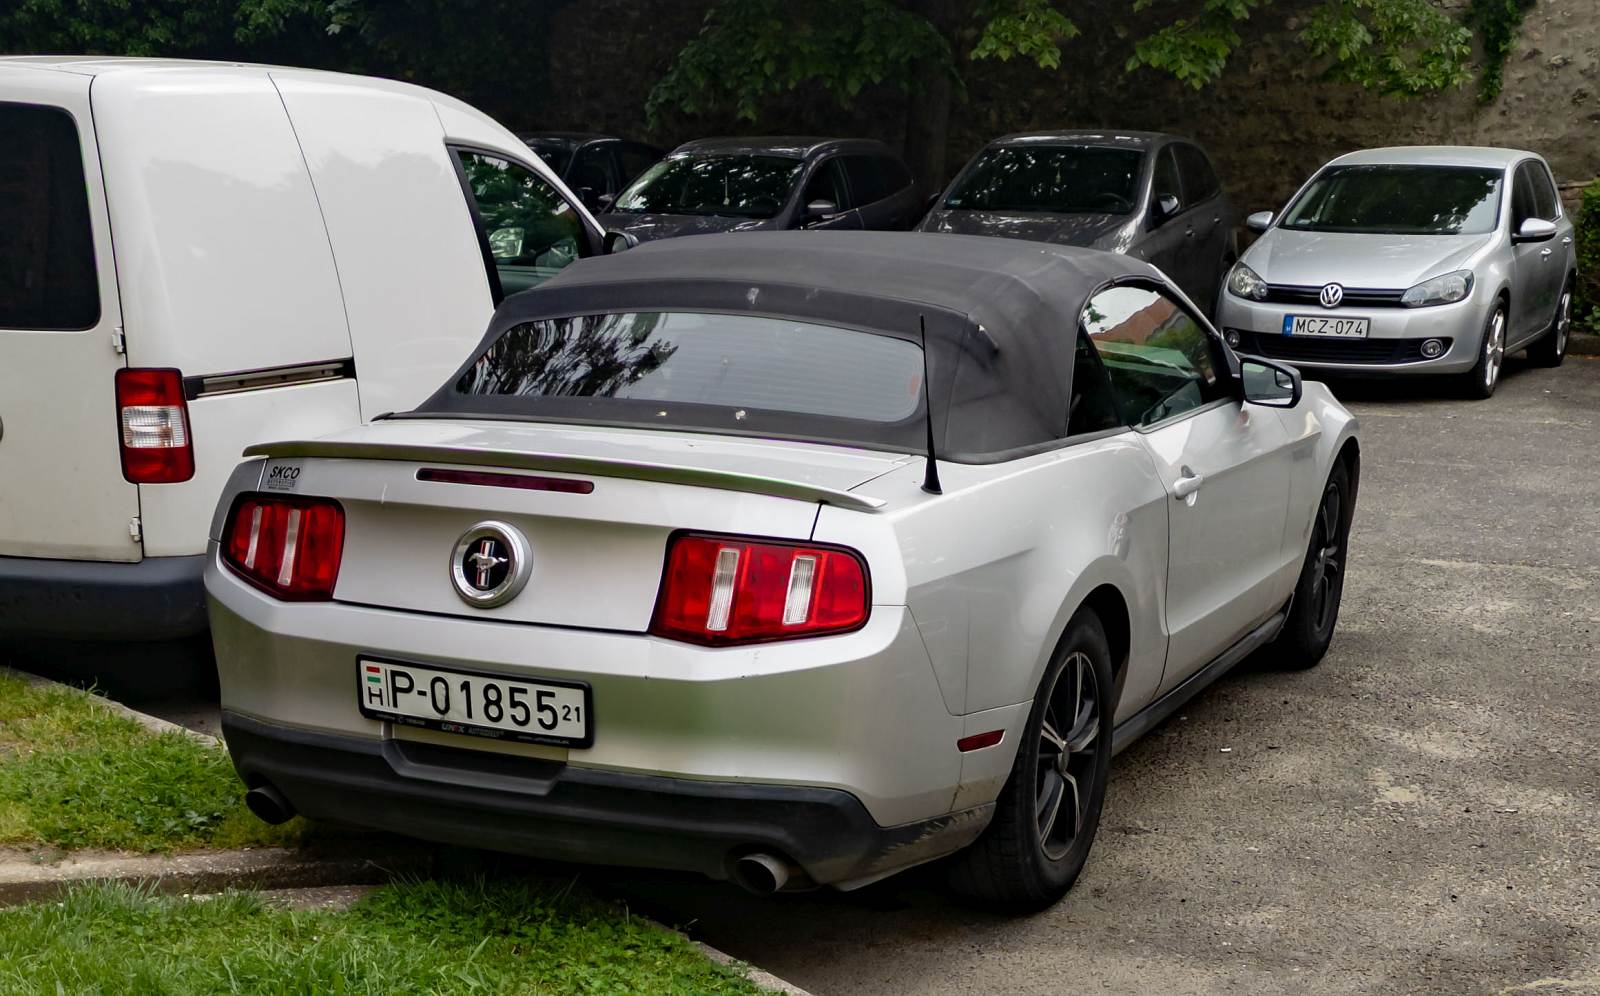 Rückansicht: Ford Mustang Cabriolet. Foto: Mai, 2022.